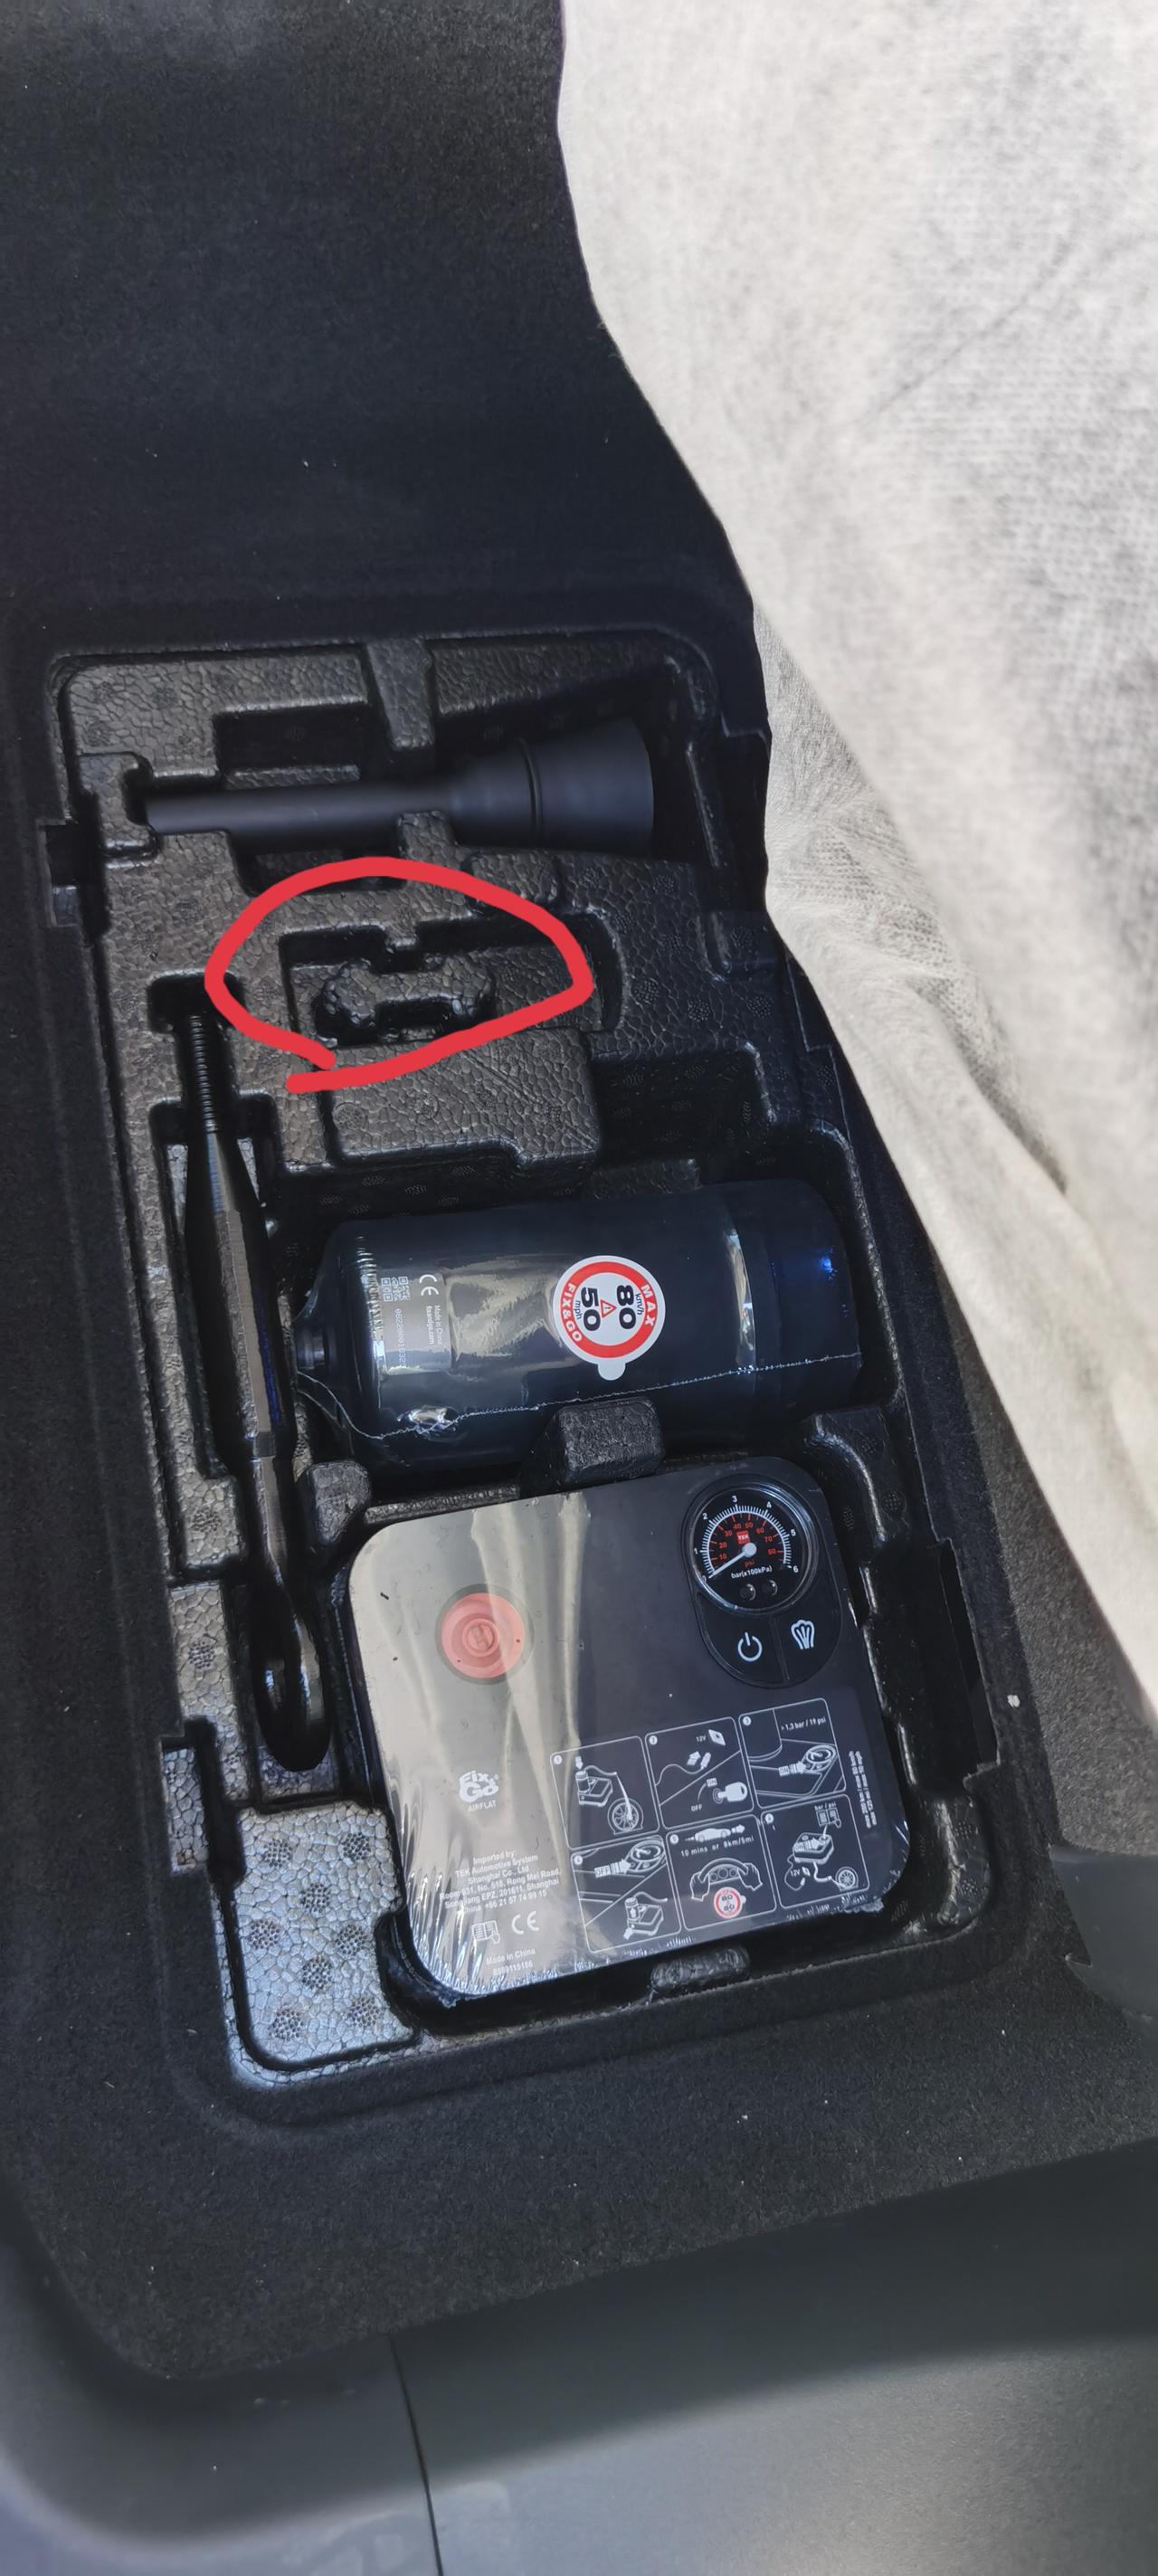 领克09 PHEV 图一是副驾驶座椅后面工具箱，标记处有工具吗？  图二是变速箱，有凸出纹理正常吗？